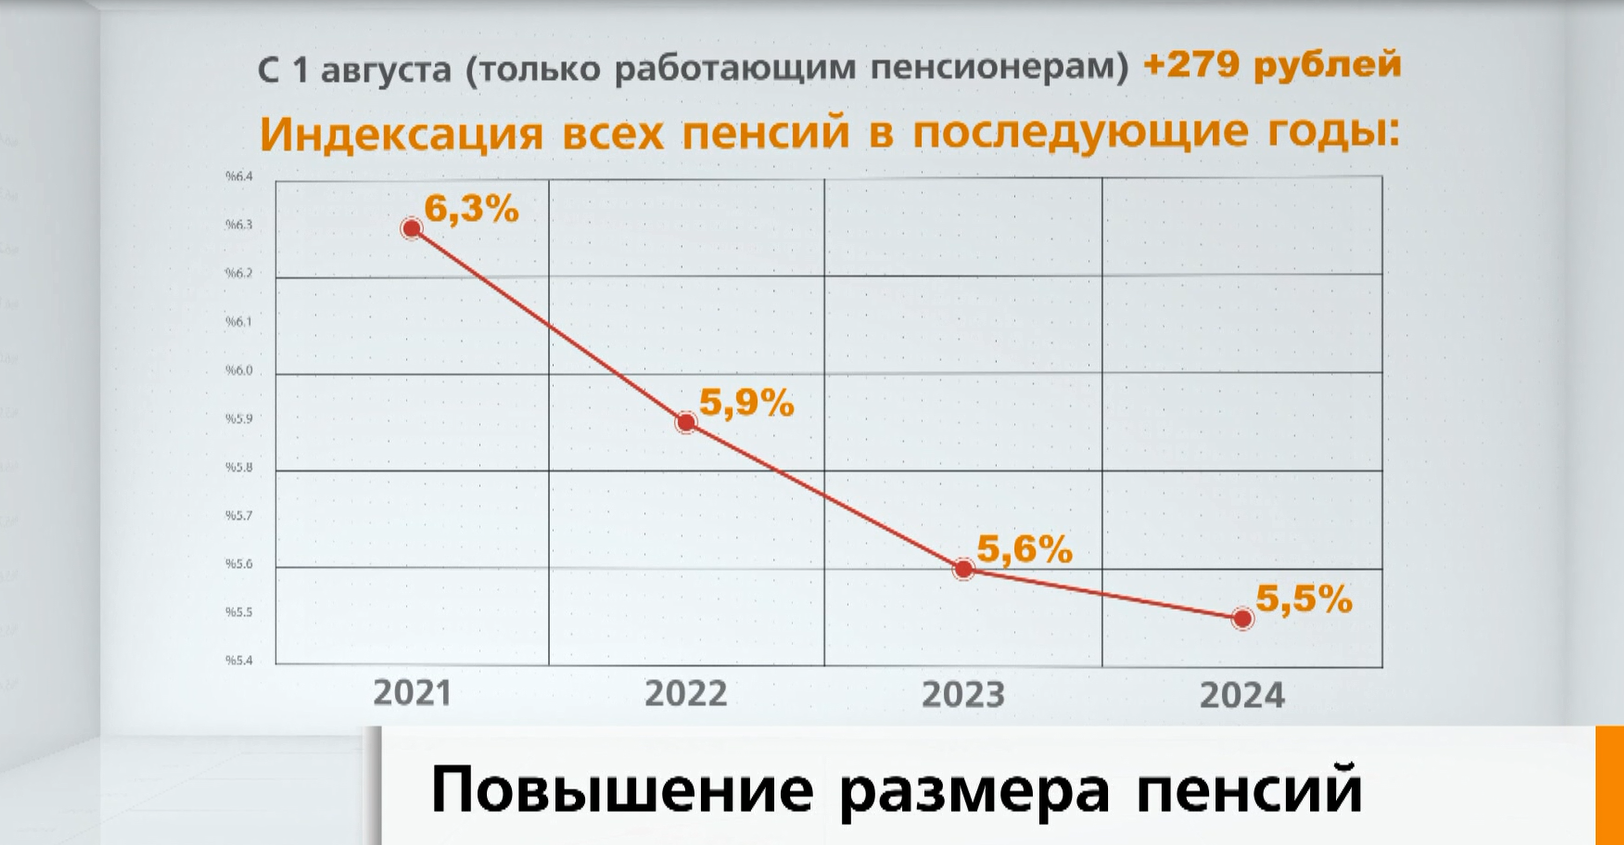 Как пойдут люди на пенсию с 2021 года живущие в чернобыле